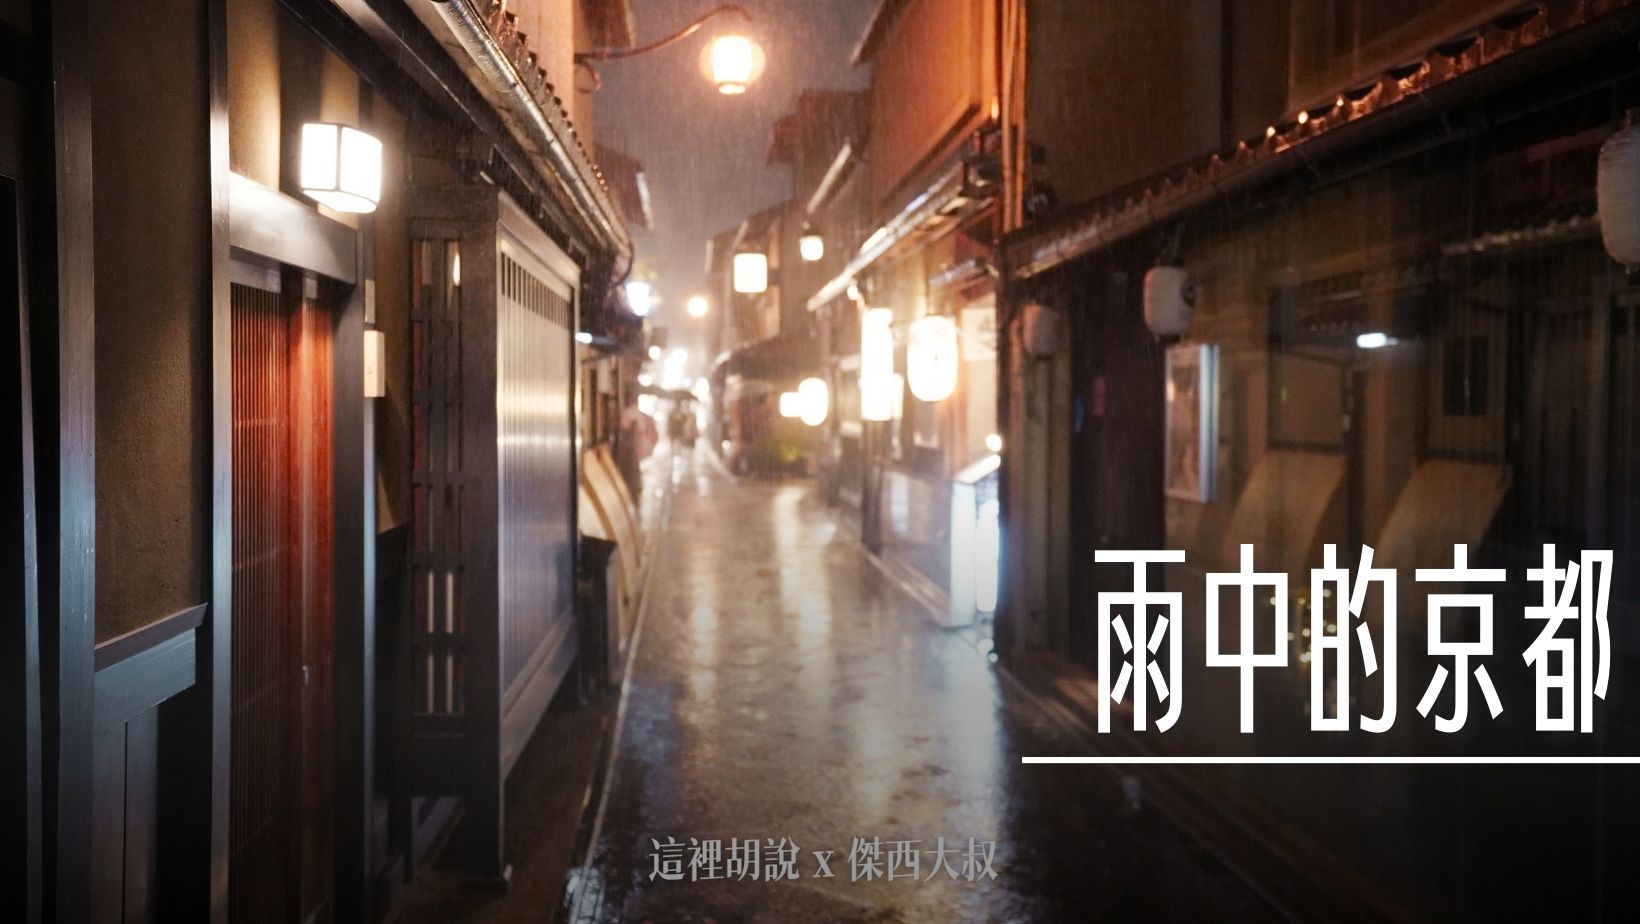 2023,下雨,下雨天,京都,日式建築,日本,雨景 @傑西大叔 x 這裡胡說